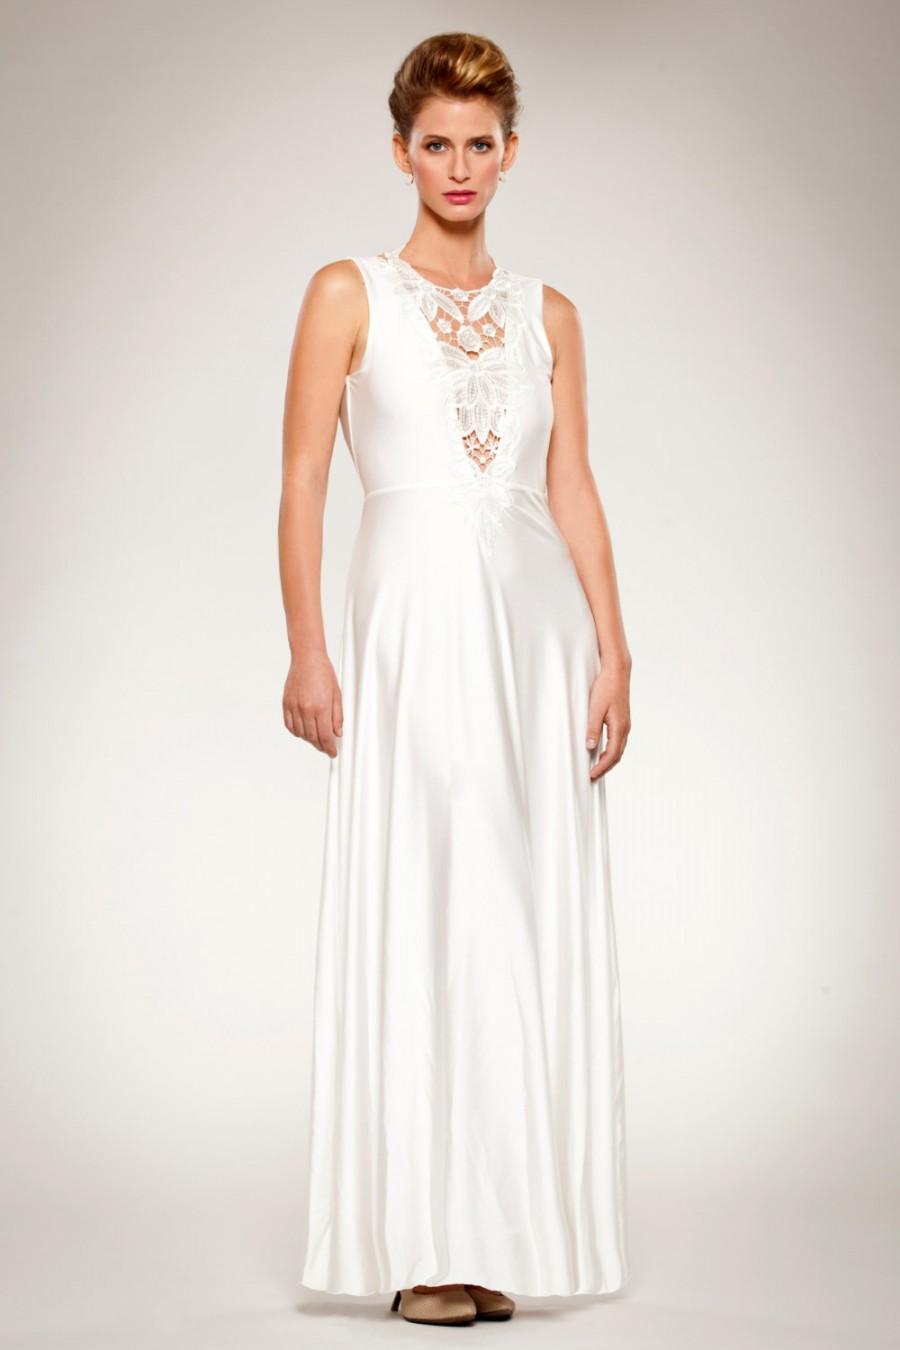 زفاف - Wedding Gown Dress with Beaded Floral Front Embroidery Appliqués Detail Open Back Fitted Waist Front Cleavage Flared Skirt Romantic Custom